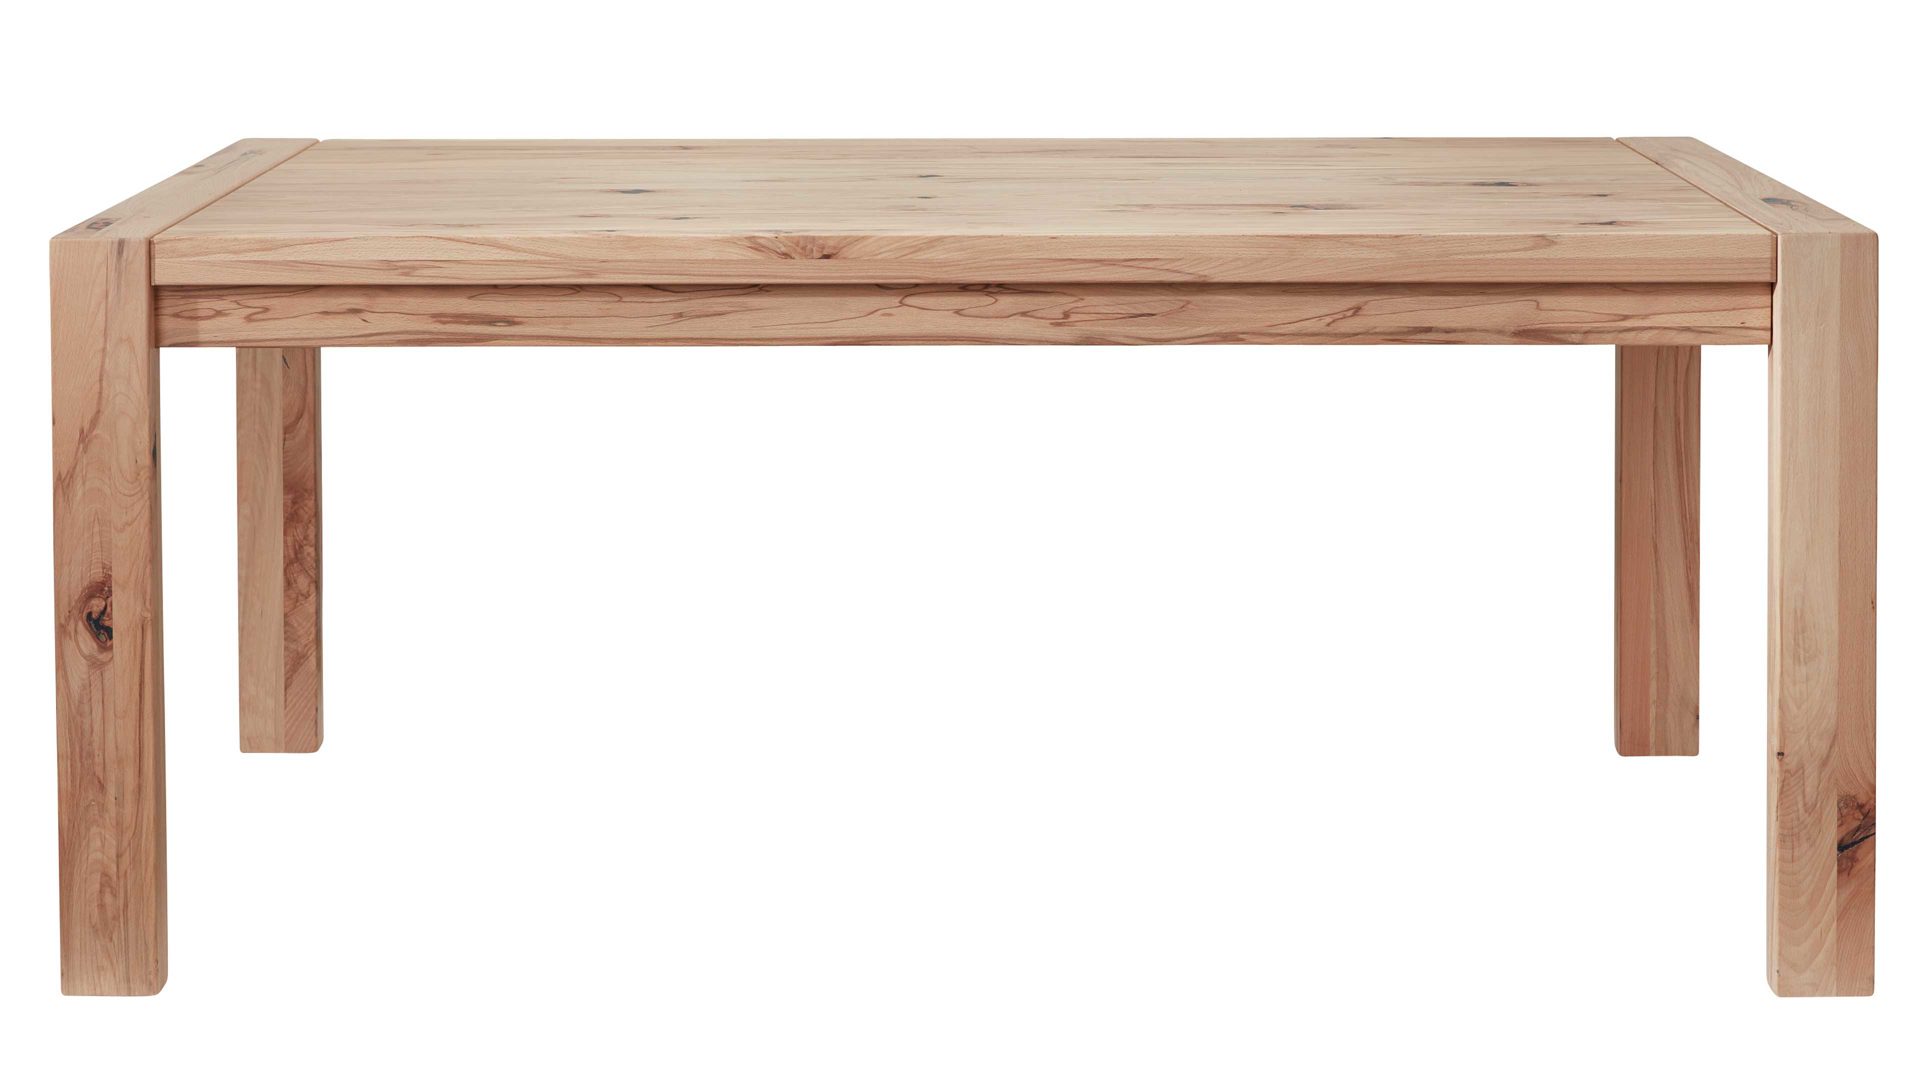 Auszugtisch Interliving aus Holz in Holzfarben Interliving Wohnzimmer Serie 2005 – Auszugtisch 117 580 Asteiche Bianco – ca. 160-260 x 90 cm